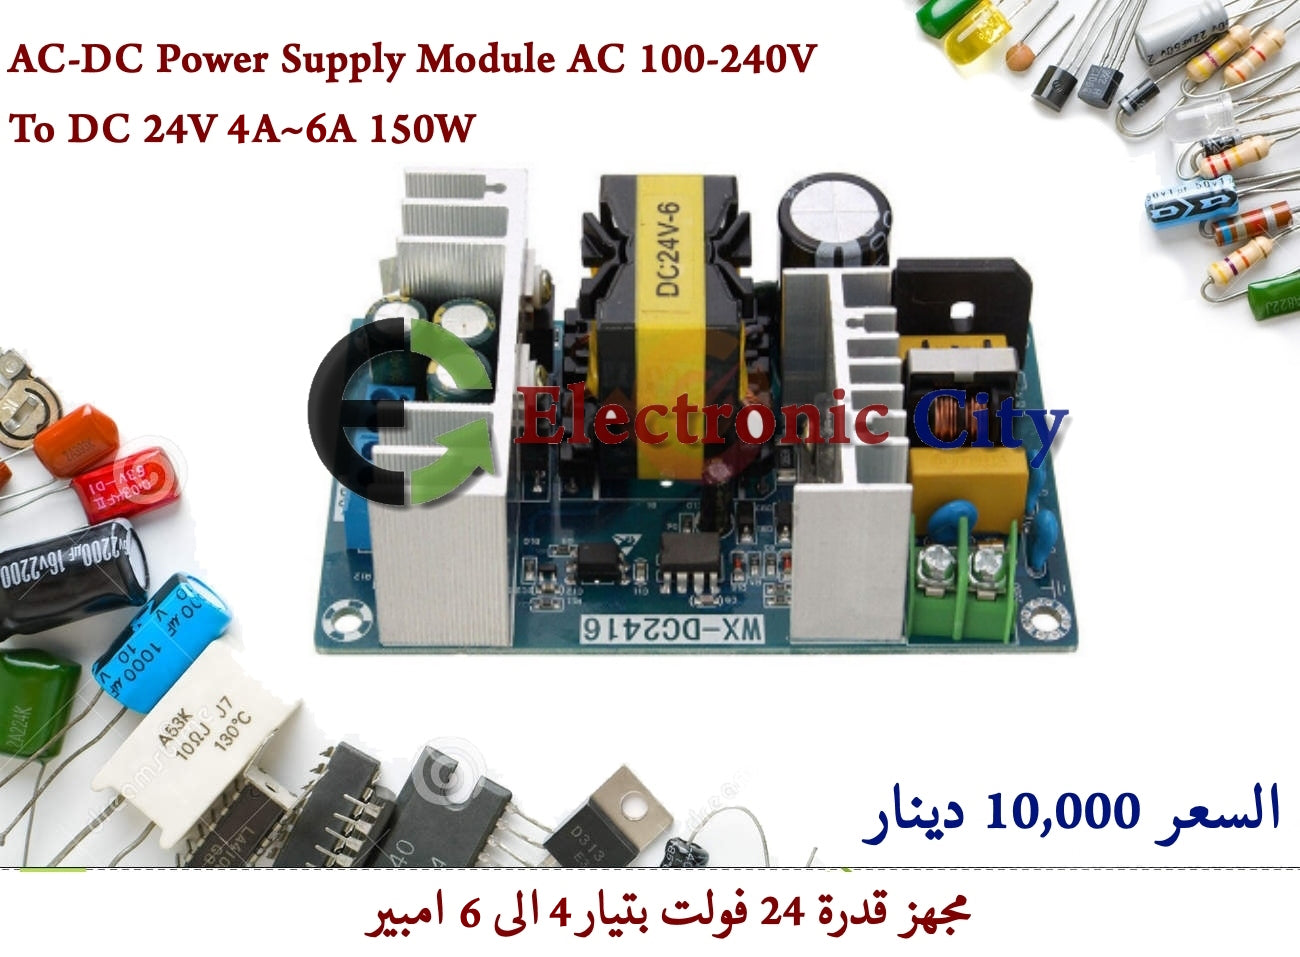 AC-DC Power Supply Module AC 100-240V to DC 24V 4A~6A 150W #P9 11987